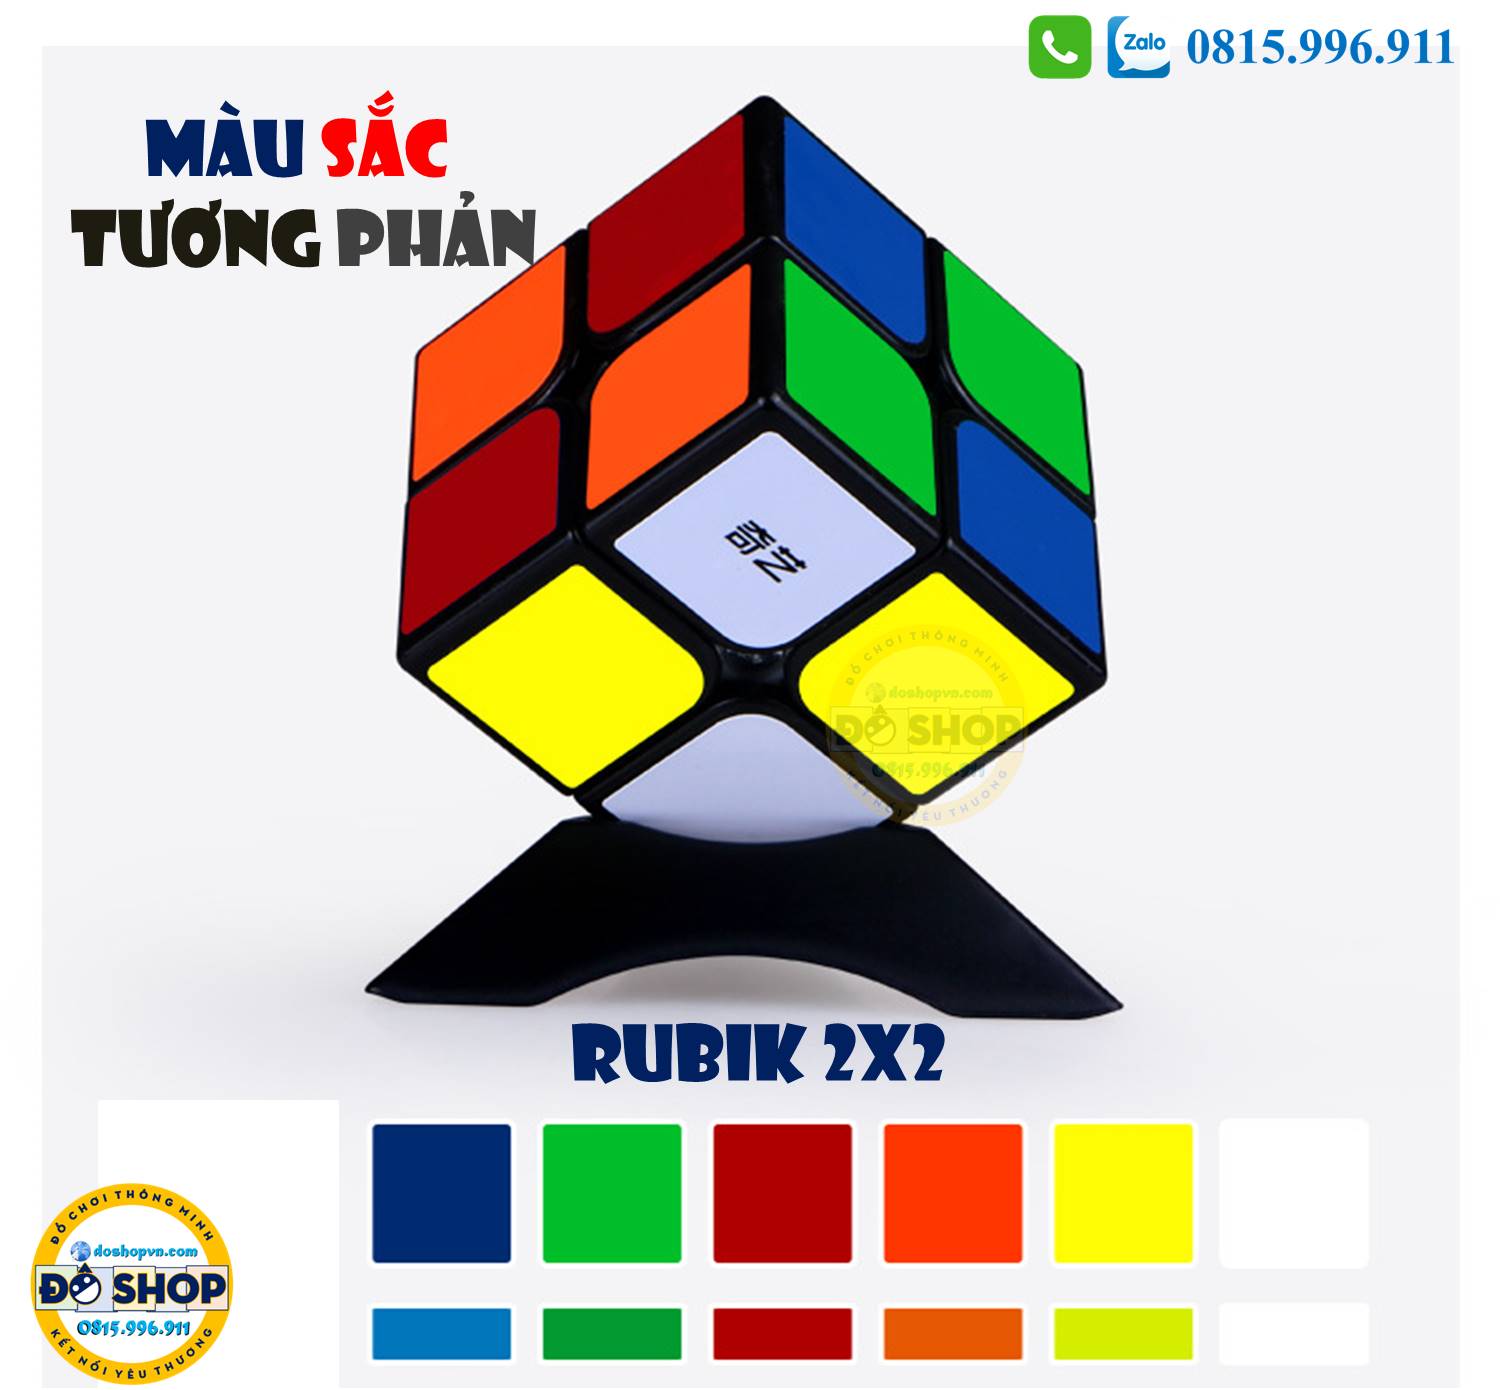 Rubik 2x2 RB22 có màu sắc đẹp mắt